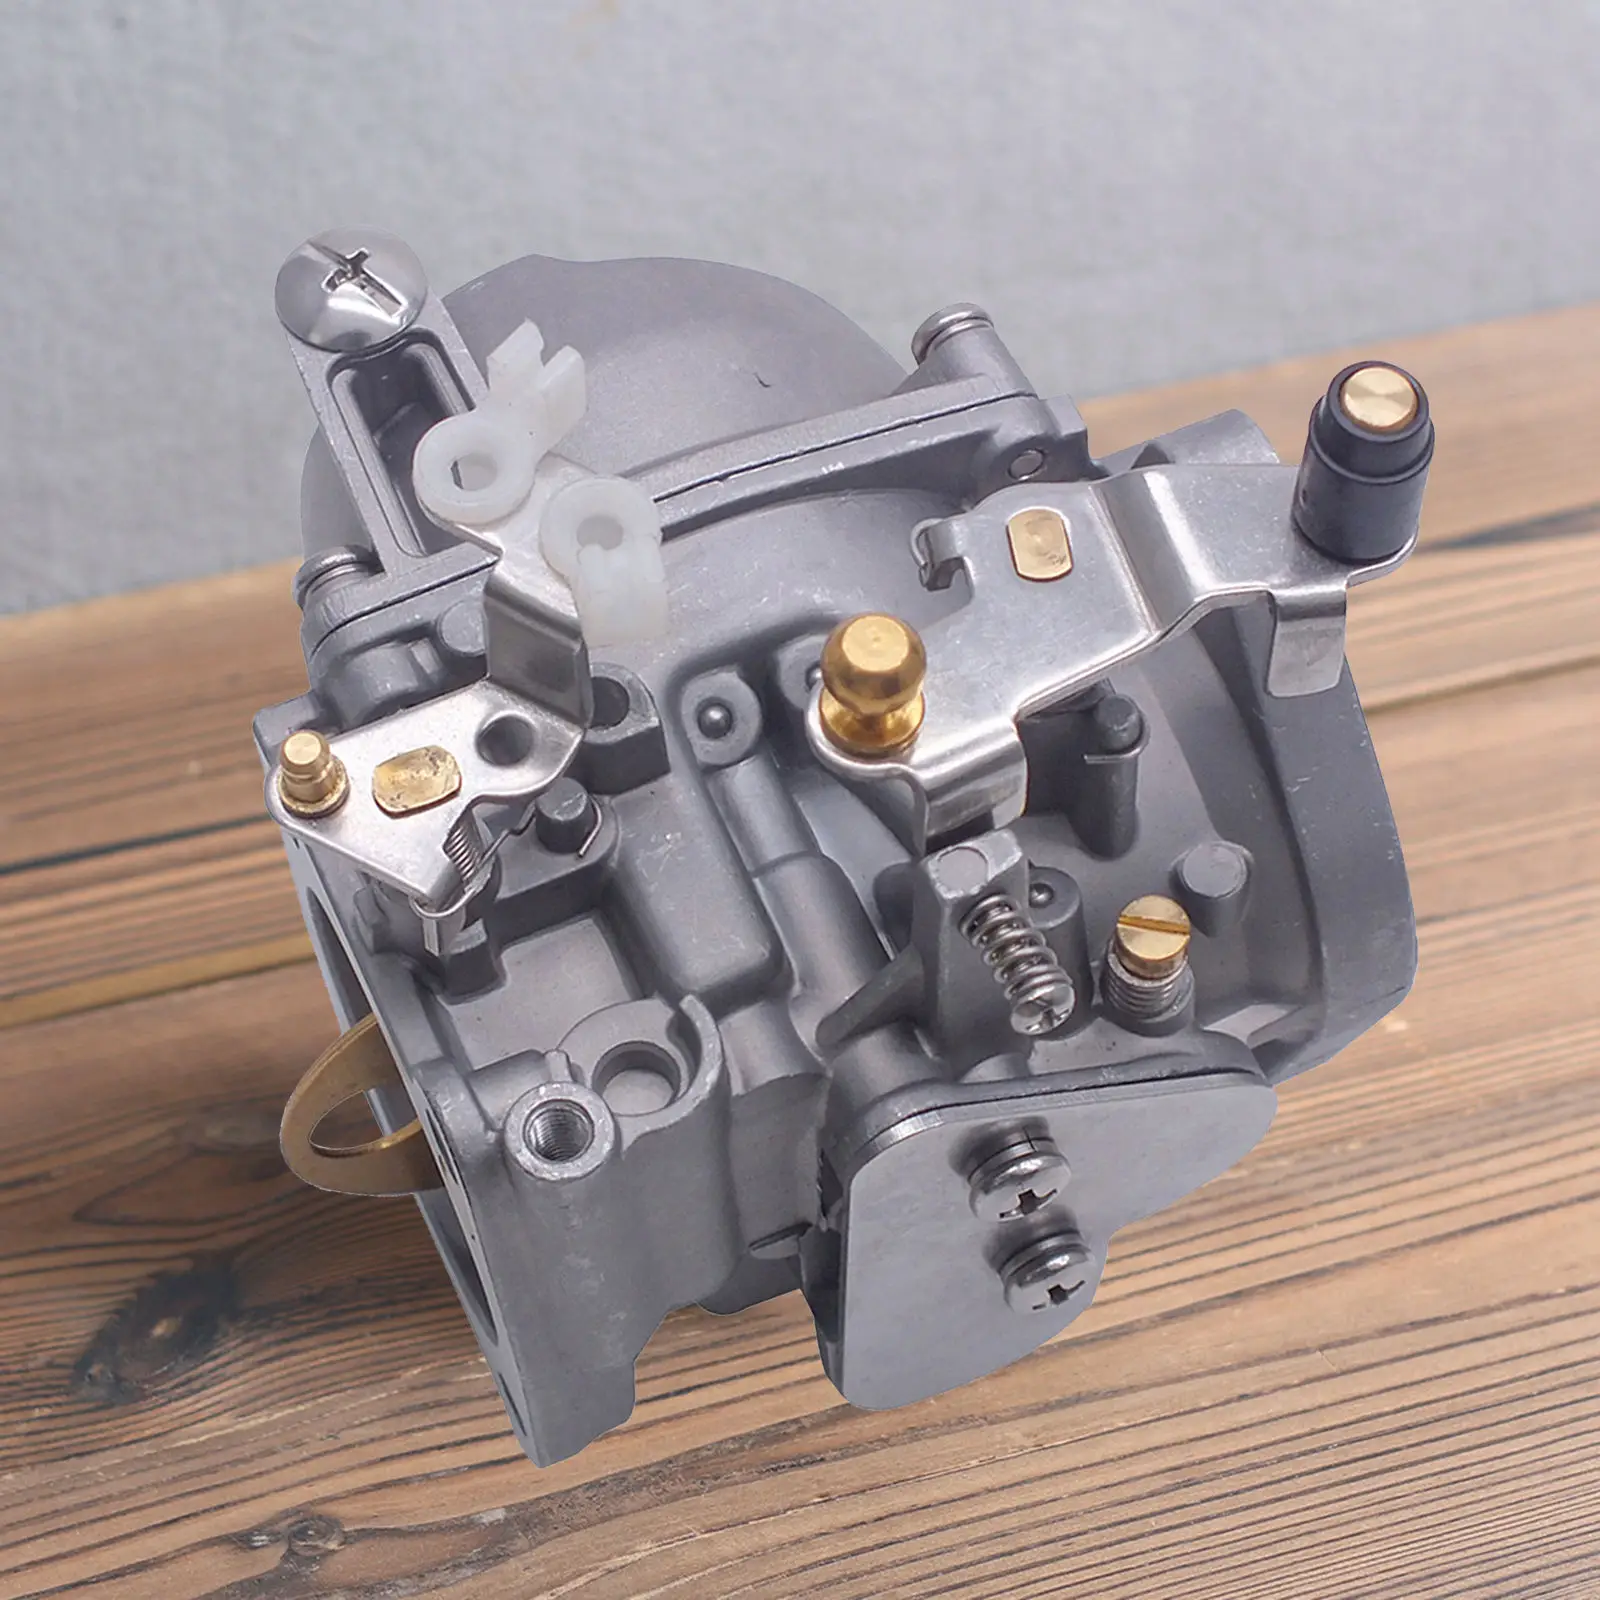 Boat Motor Carburetor Assy 688-14303 688-14302 688-14301 for Yamaha 3-cylinder 85 HP 2-Stroke Outboard Engine Motors